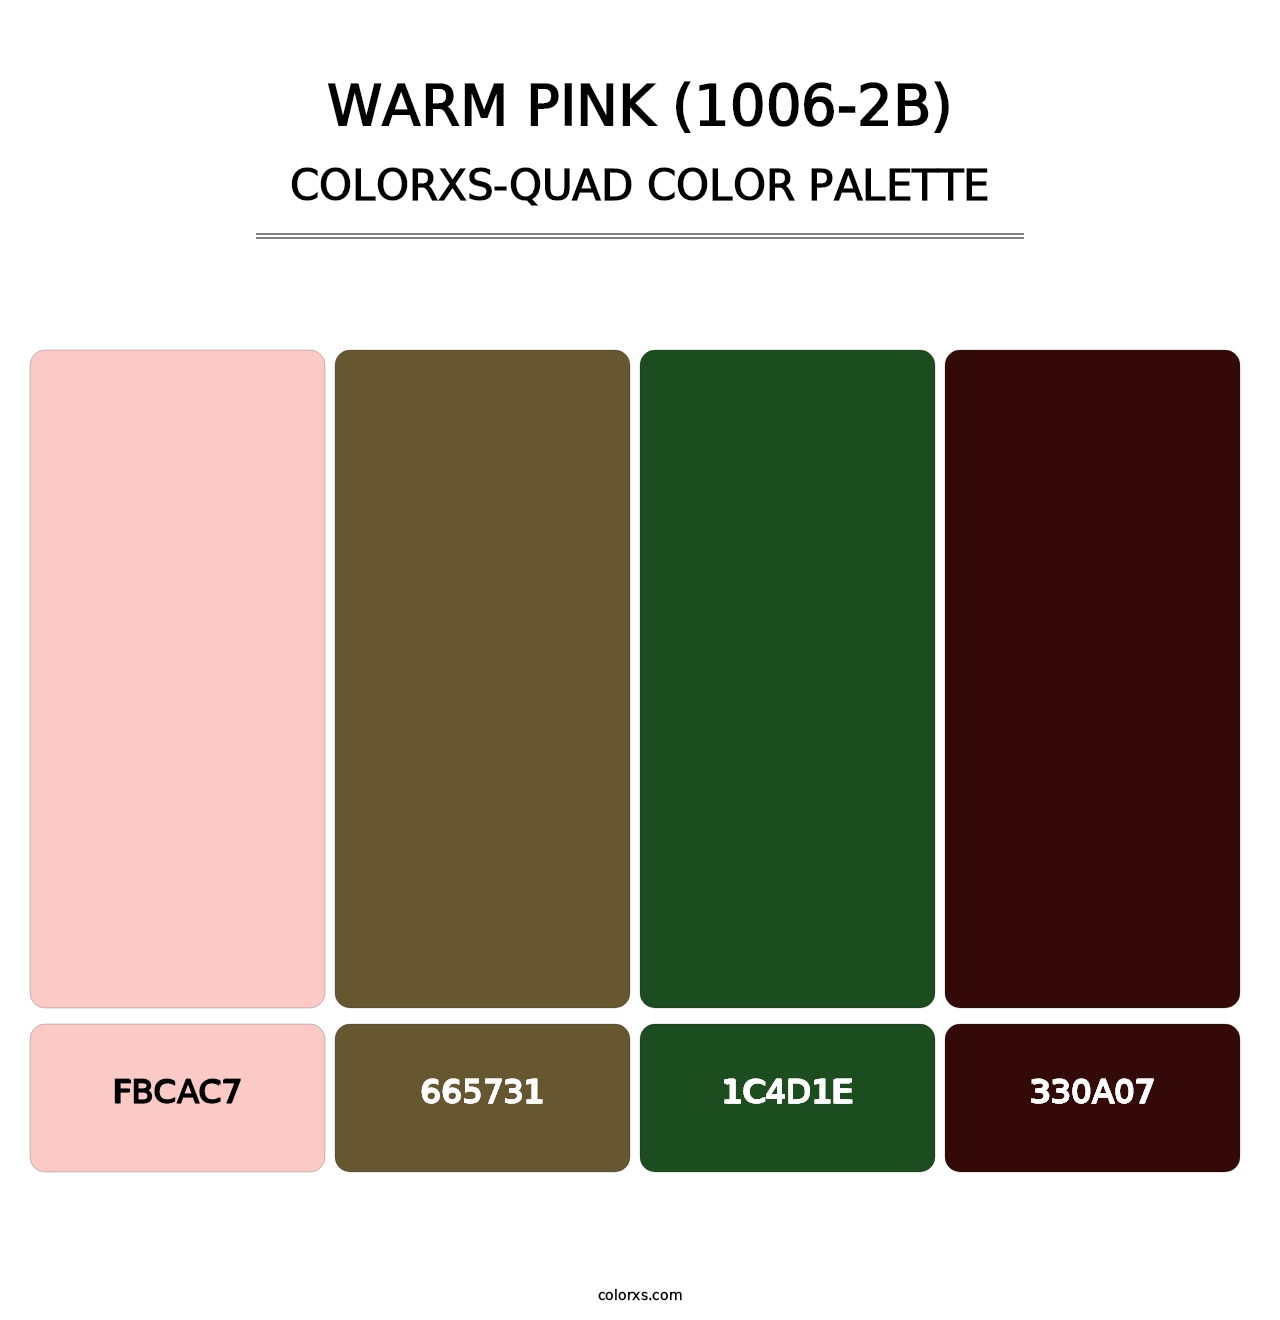 Warm Pink (1006-2B) - Colorxs Quad Palette